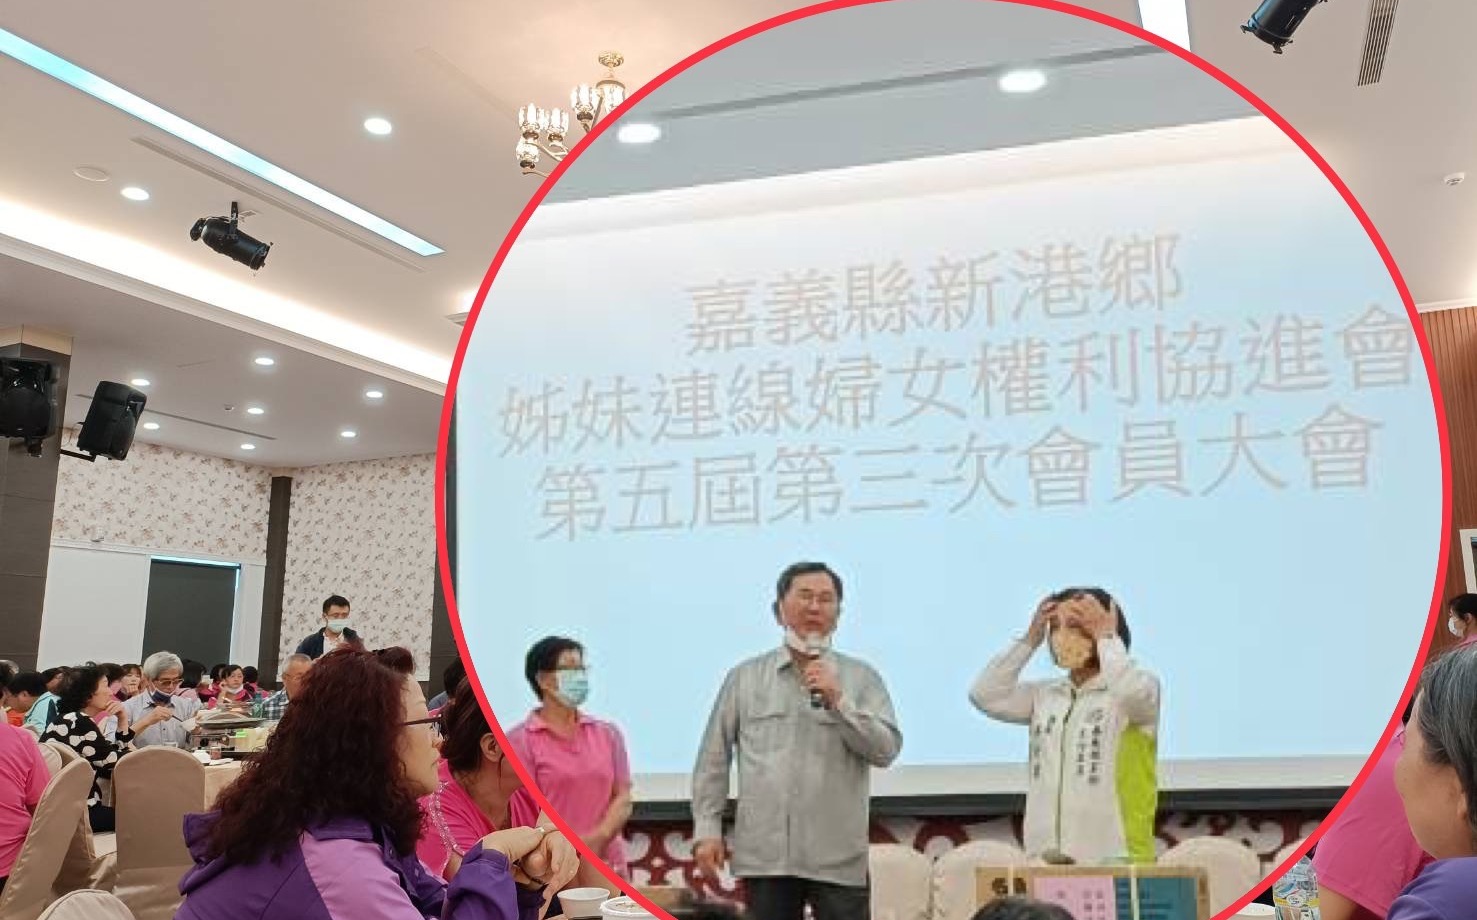 違反傳染病防治法遭罰15000元 立委陳明文致歉 | 政治 | | Ne